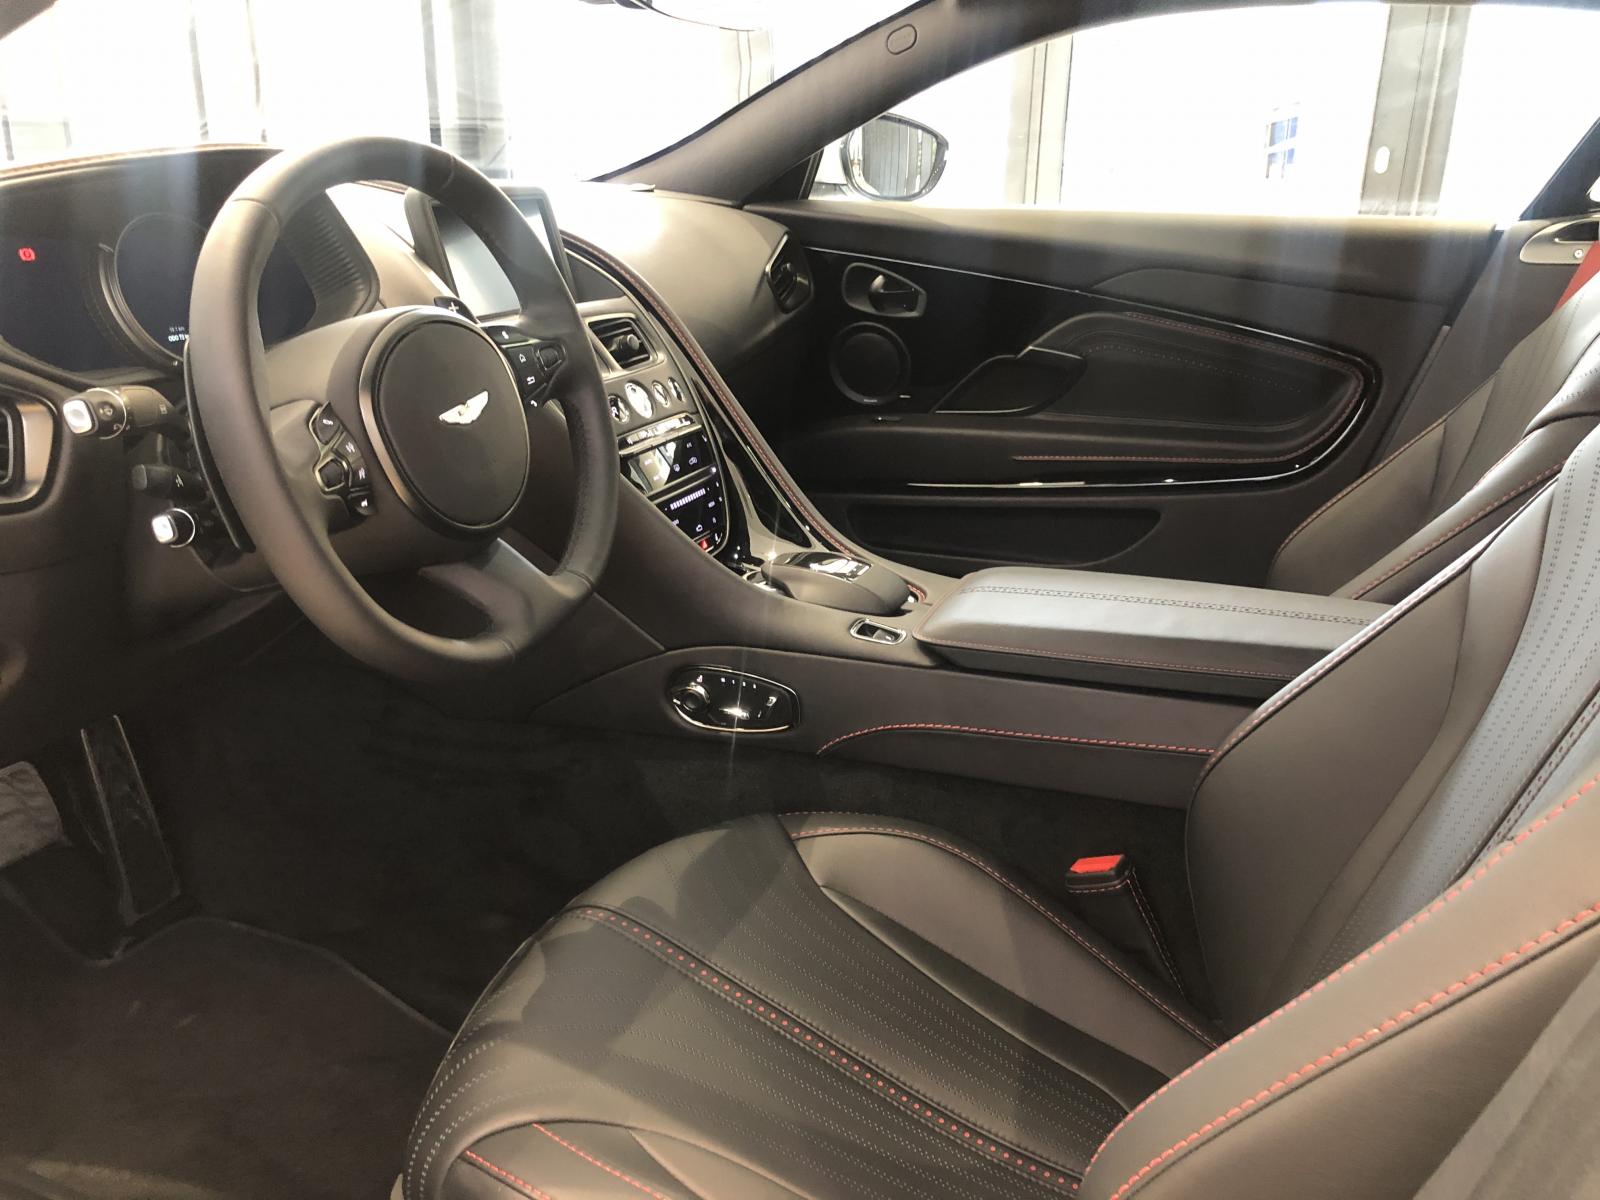 Nội thất chiếc siêu xe Aston Martin DB11 V8 của doanh nhân Vũng Tàu bọc da màu đen kết hợp với dây an toàn và đường chỉ khâu màu đỏ nổi bật